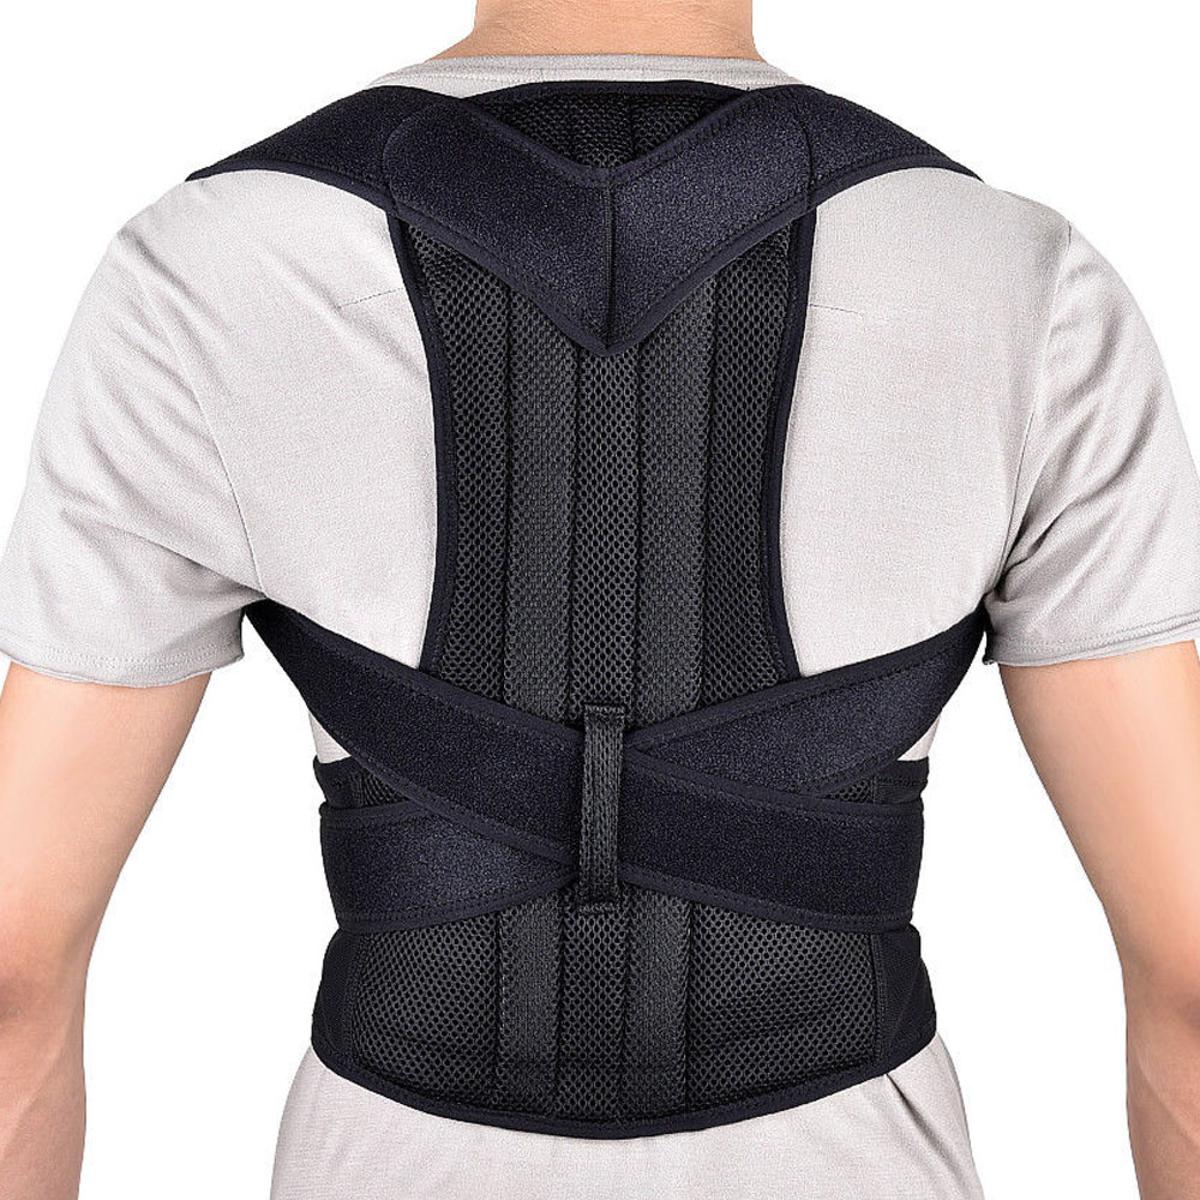 Posture belt, posture corrector belt, Back support belt, Back Pain